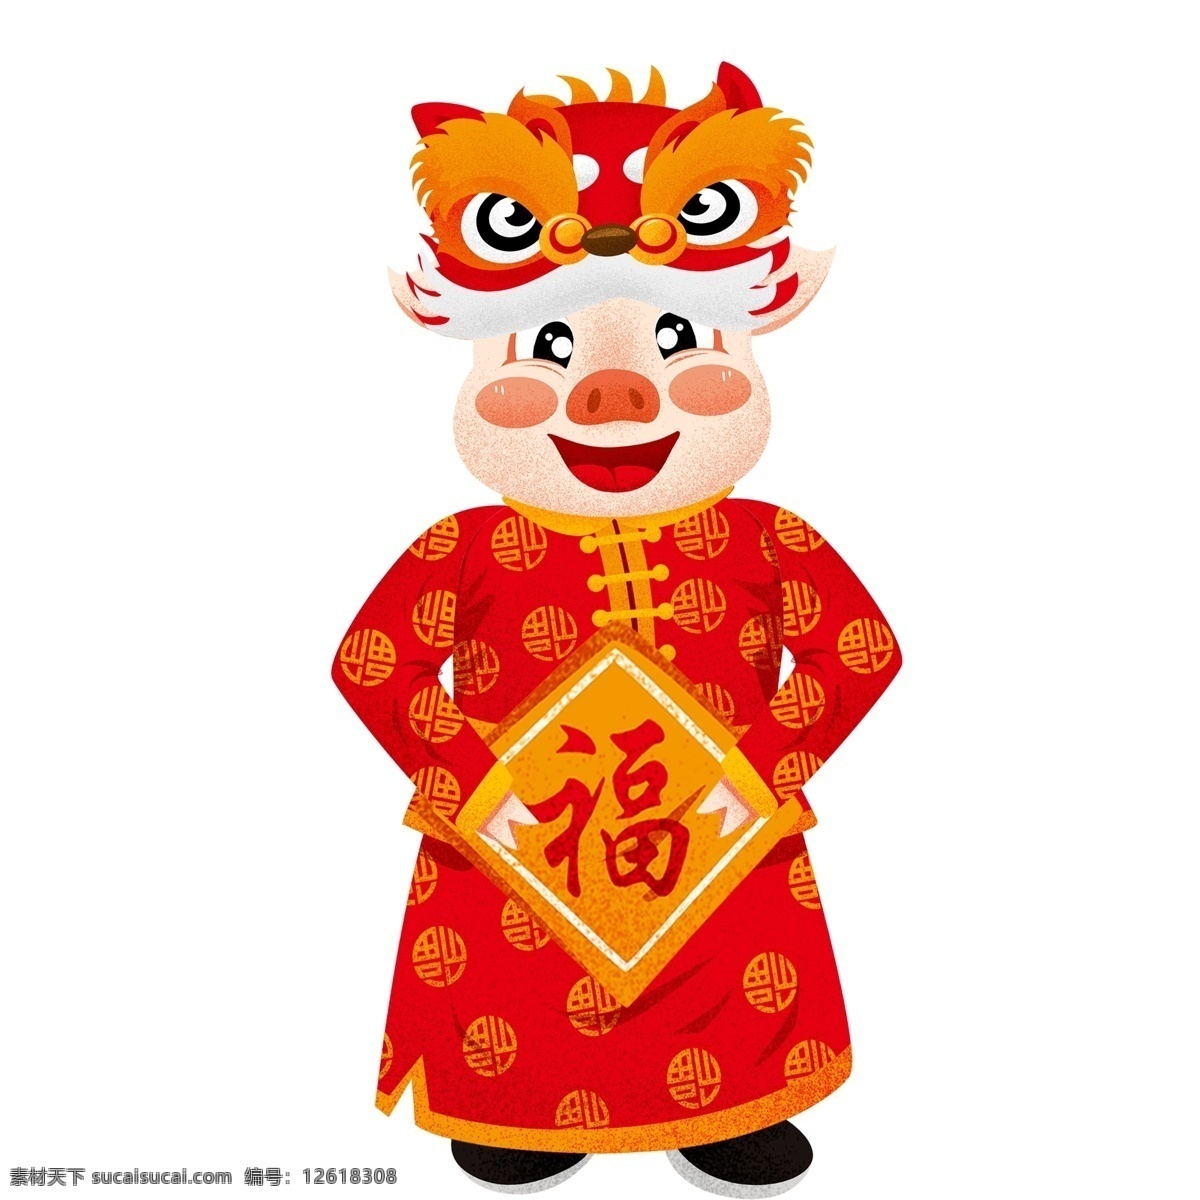 红色 喜庆 猪年 拜年 按着 福字 福 猪 中国风 插画 春节 卡通 小猪 唐装 舞狮头 传统元素 新年 小猪形象 猪年形象